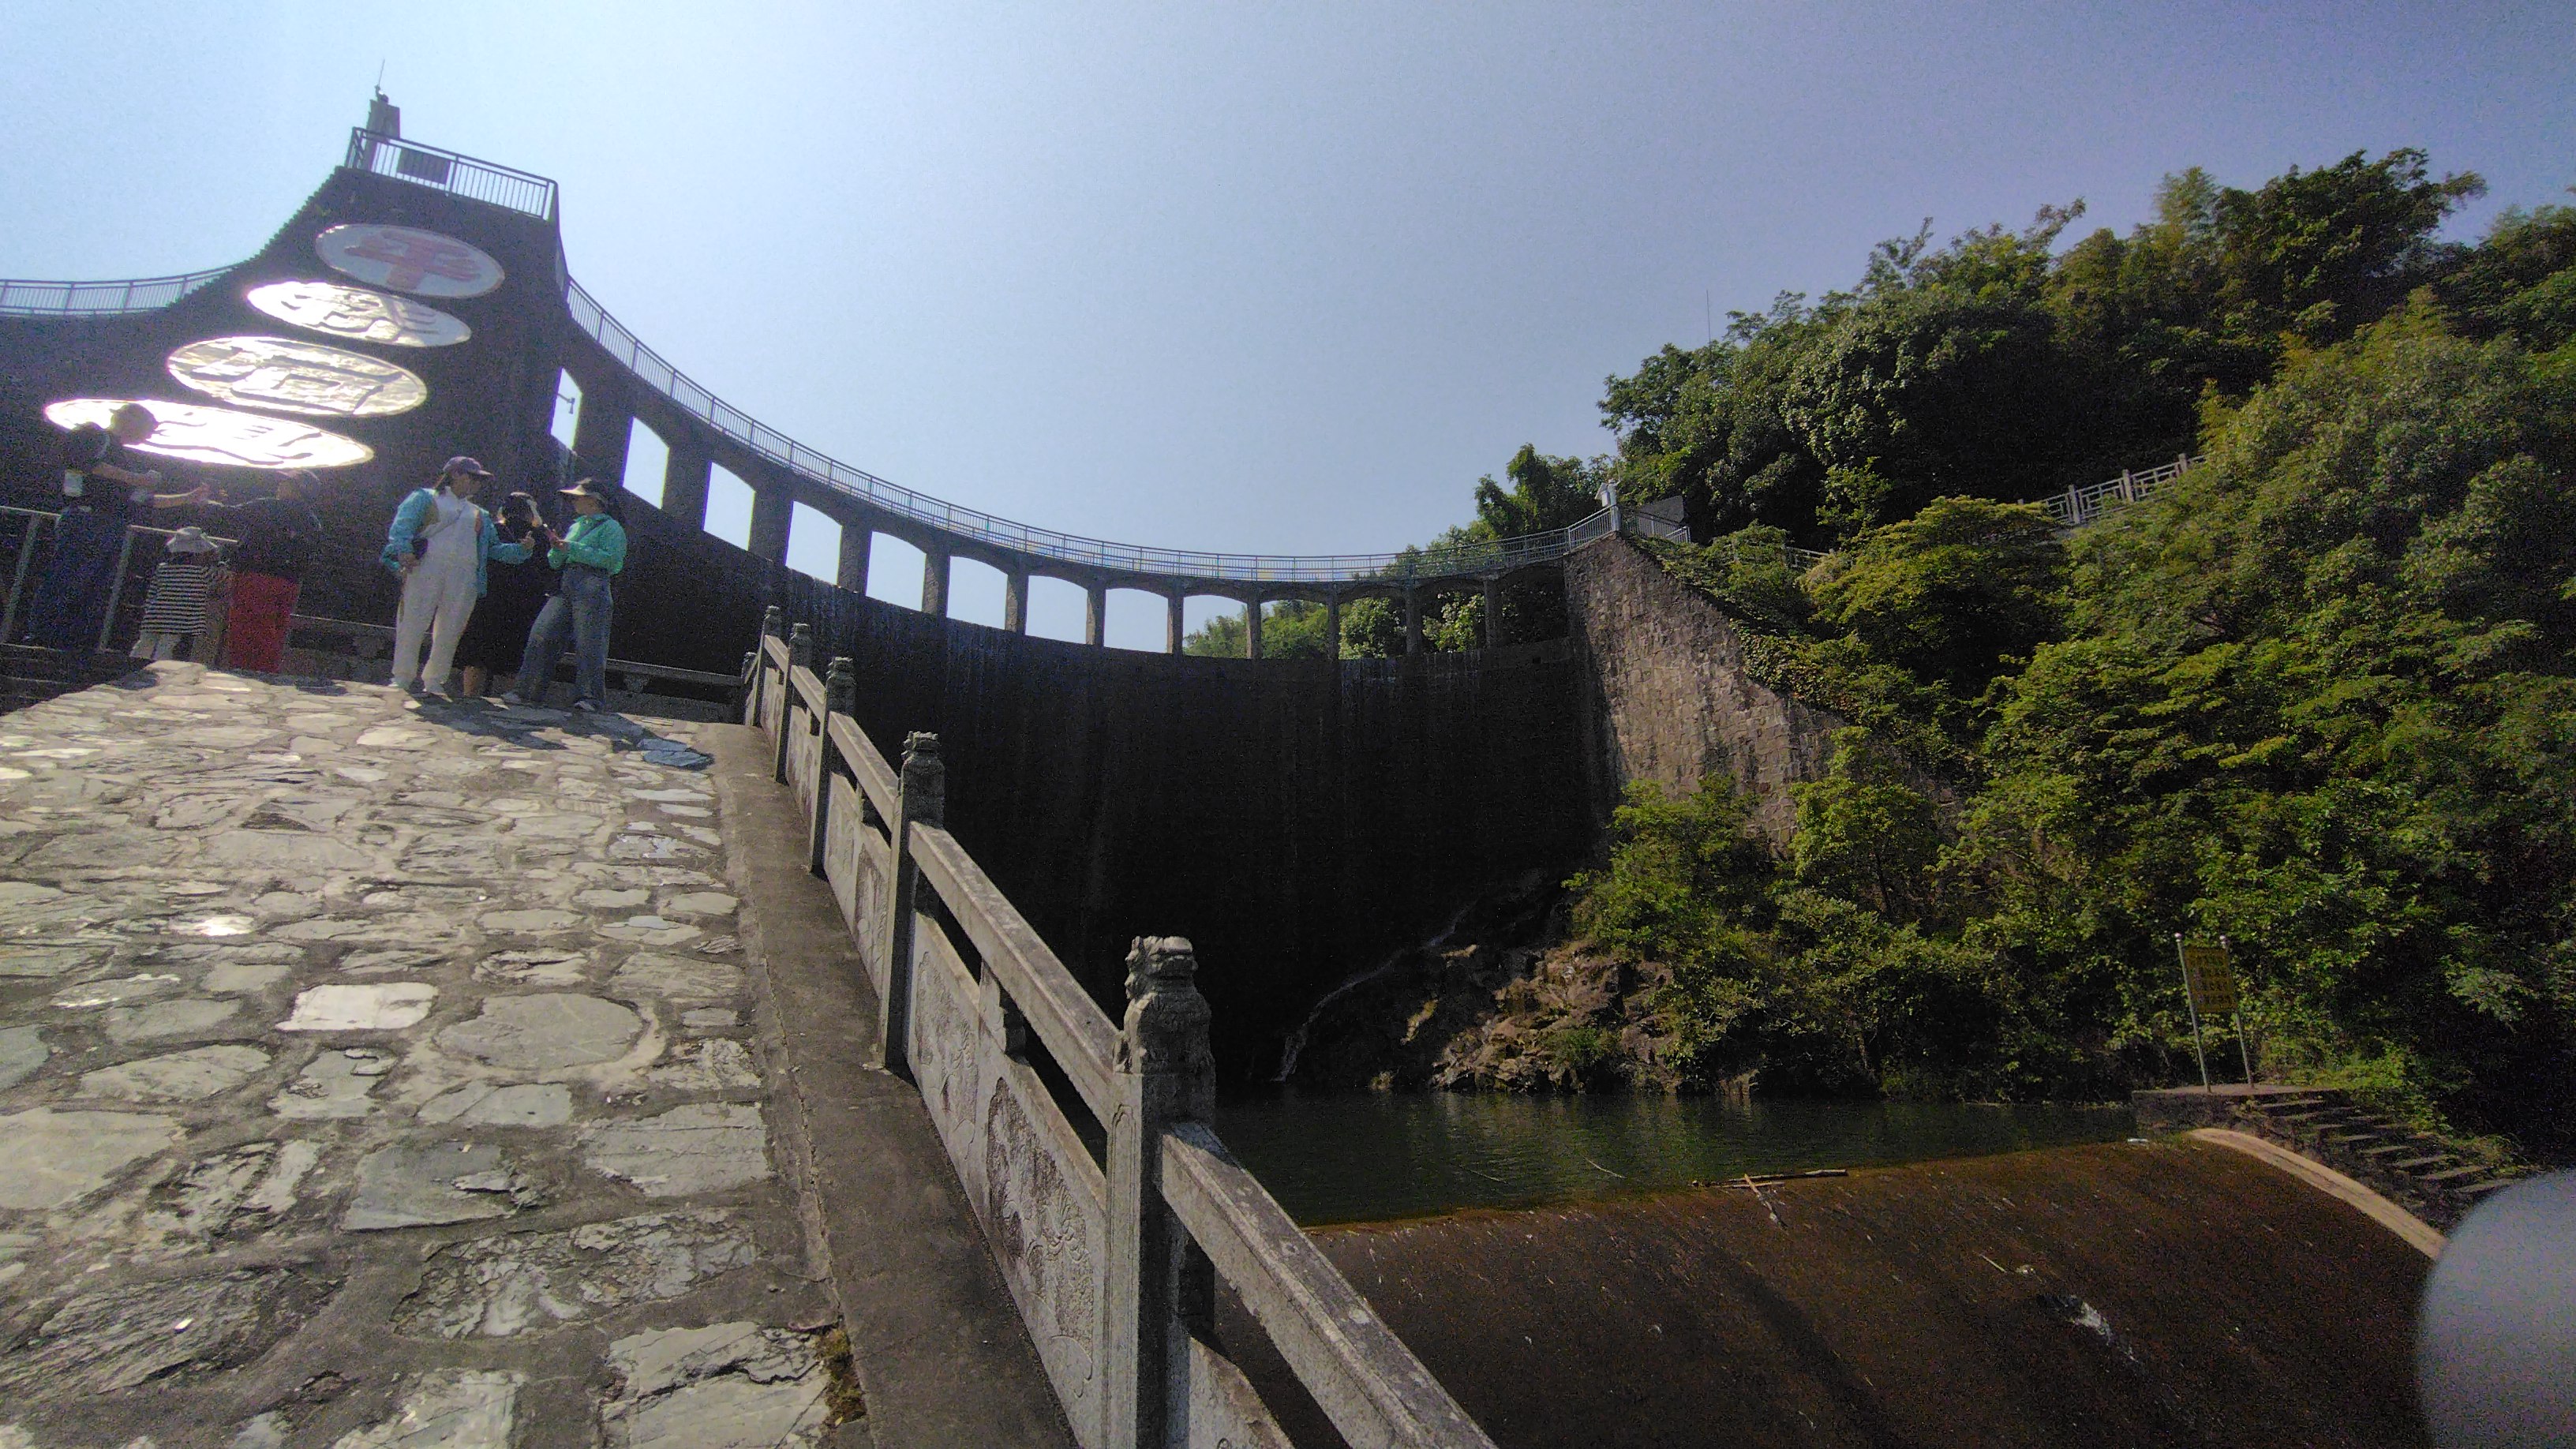 今天我们来到了溧阳平桥石坝,它规模不大,但给人结实和力量的感觉